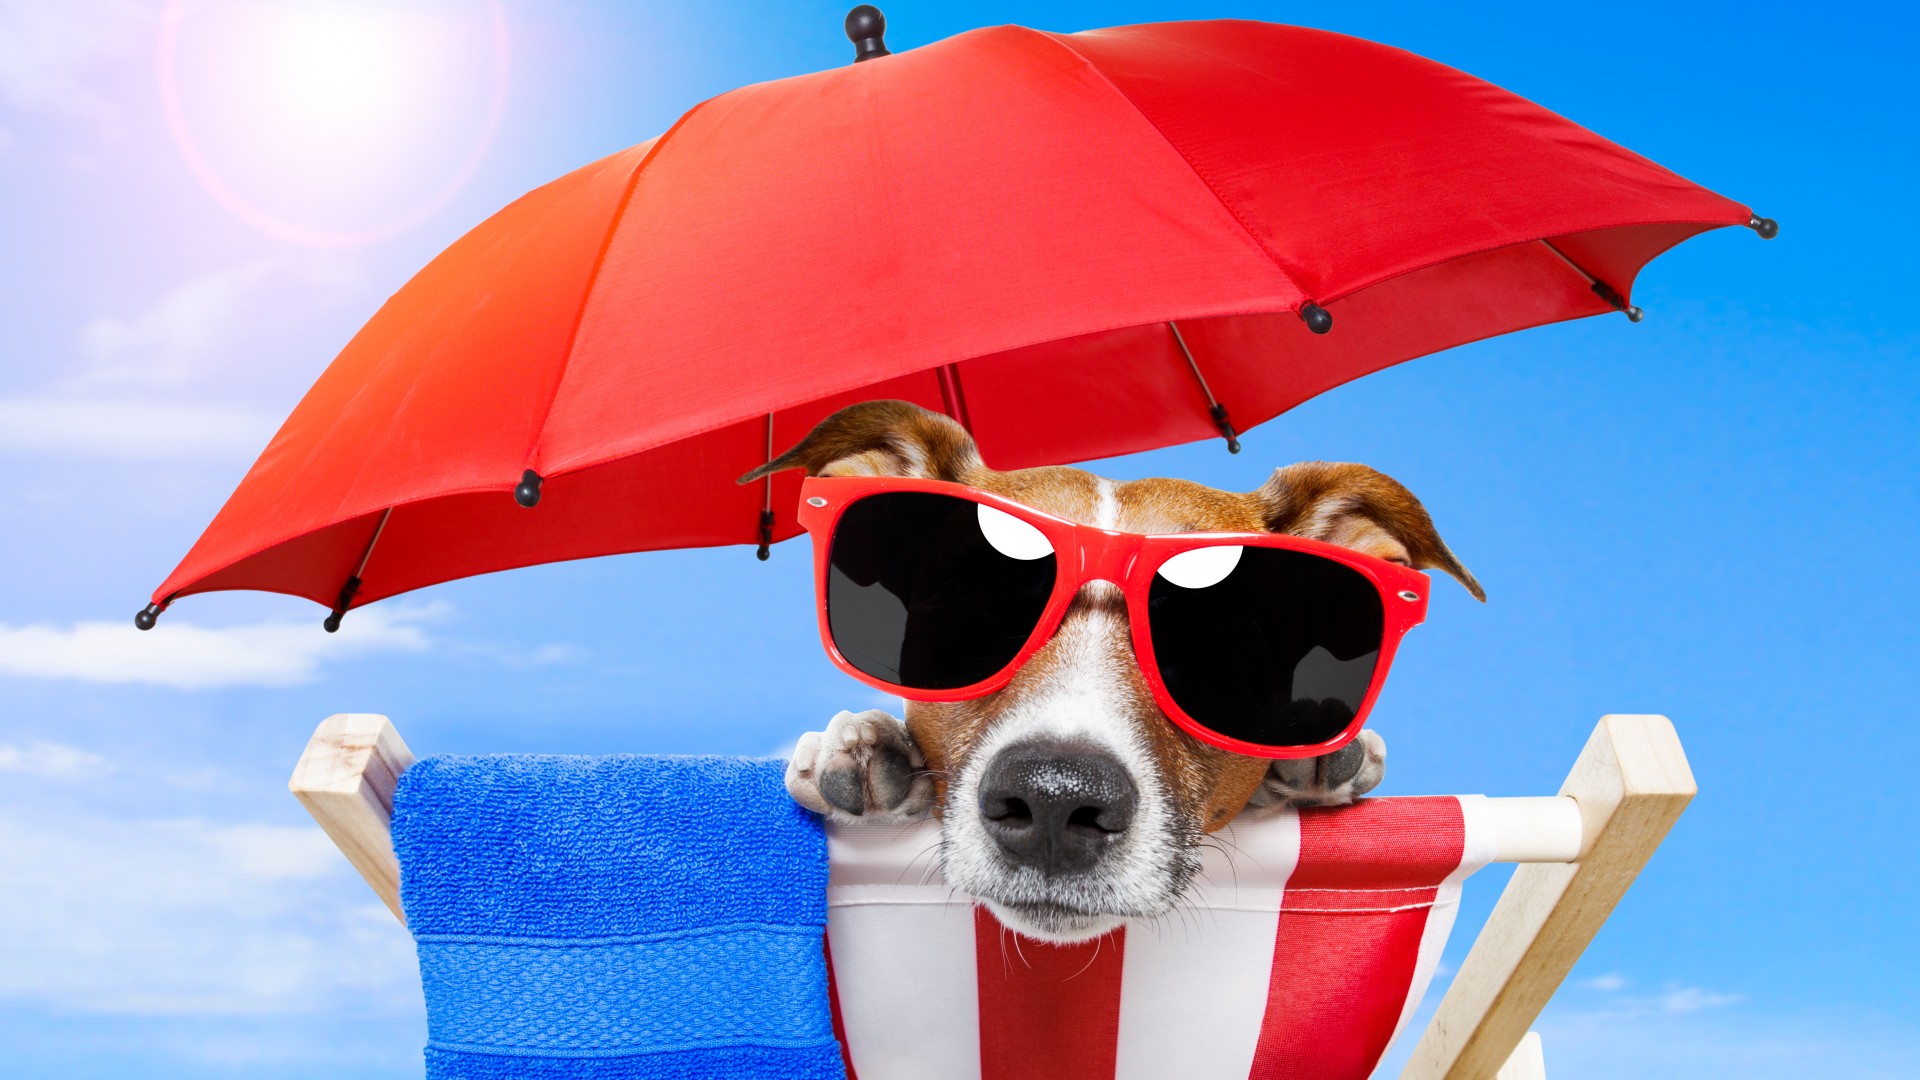 собака, щенок, солнце, лето, пляж, очки, зонтик, отдых, животное, питомец, небо, Dog, puppy, sun, summer, beach, sunglasses, umbrella, vacation, animal, pet, sky (horizontal)